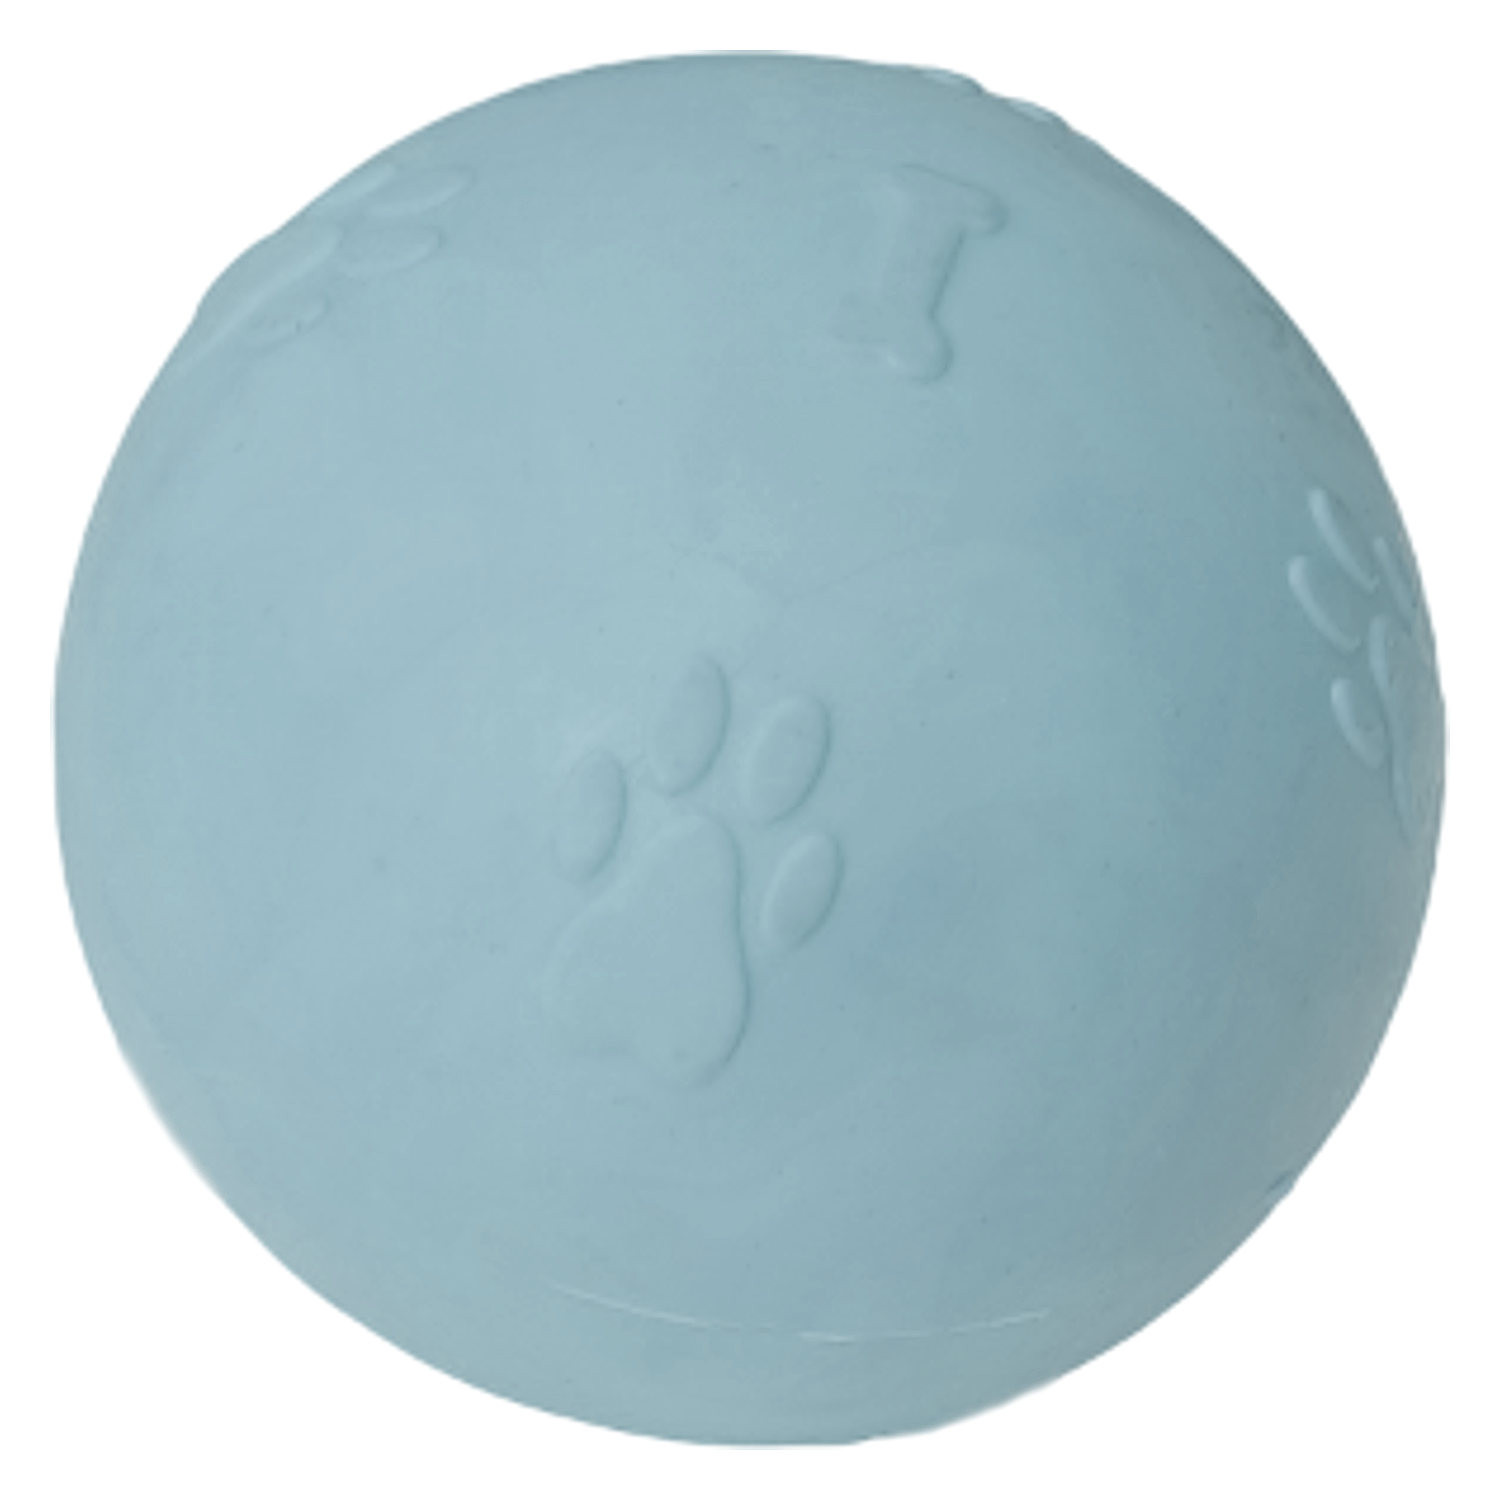 CLZ205 Pati Desenli Sert Köpek Oyun Topu 6 cm Small Açık Mavi